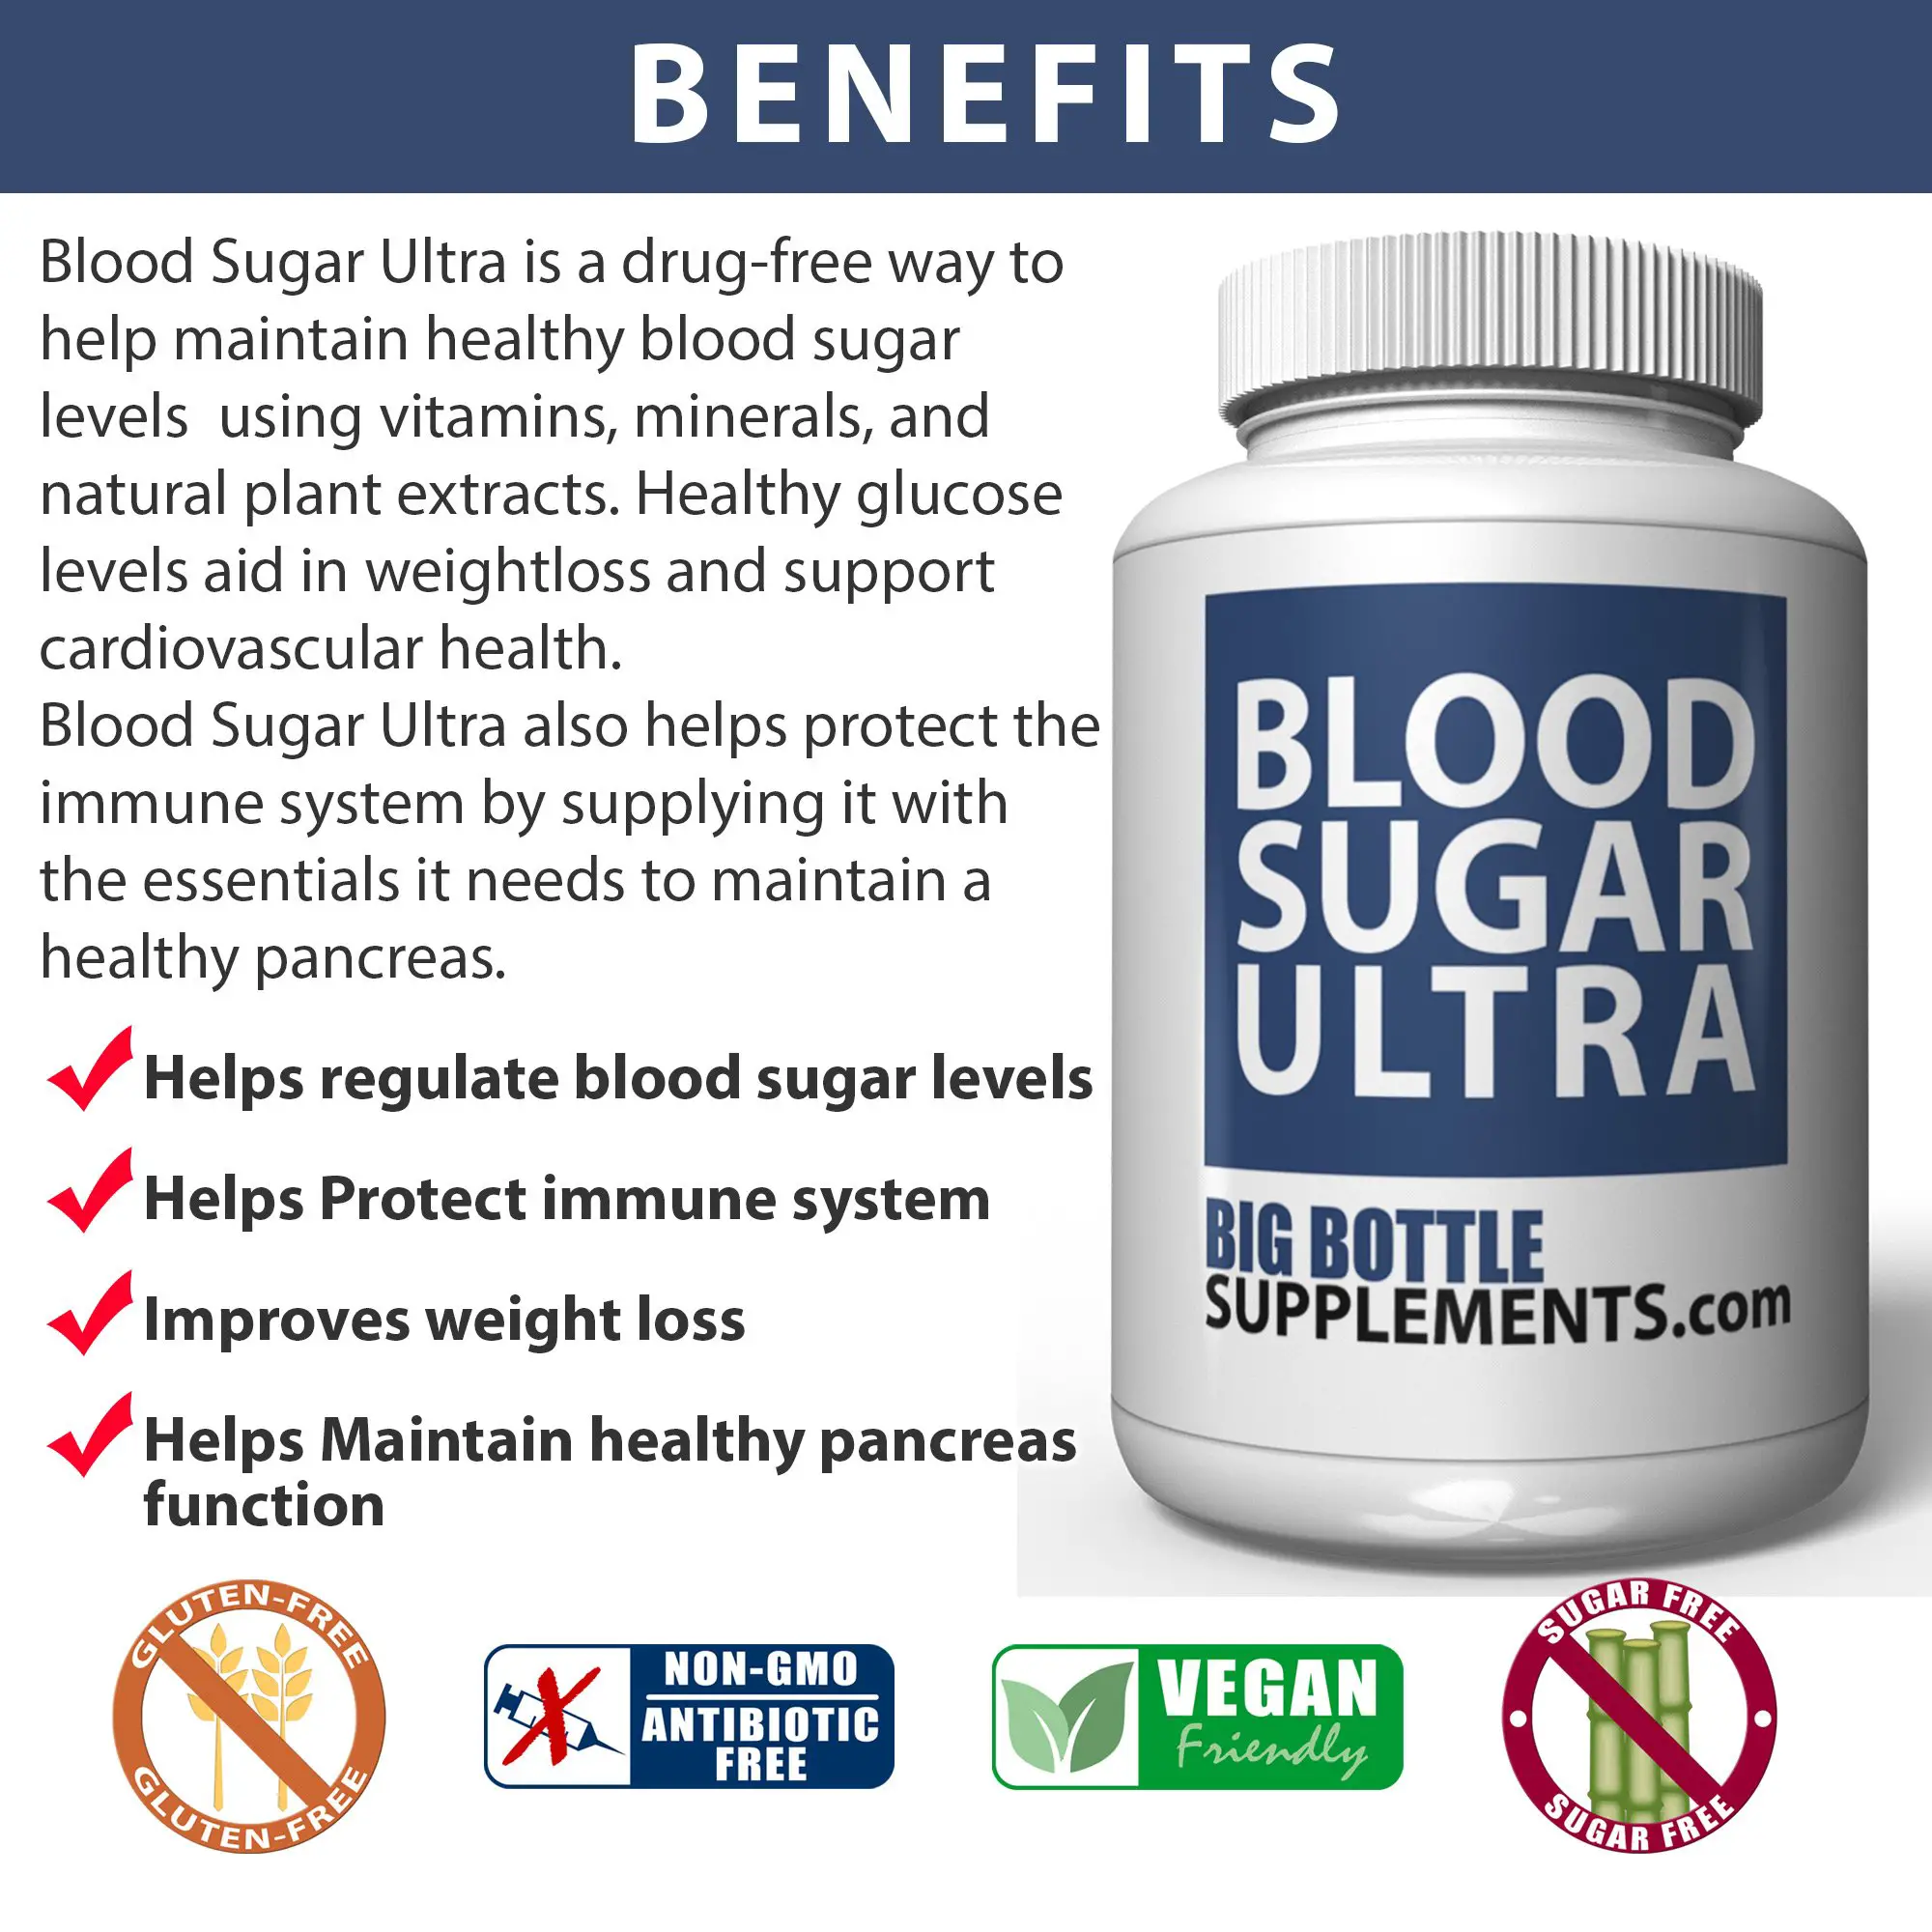 BigBottleSupplements.com Blood Sugar Ultra